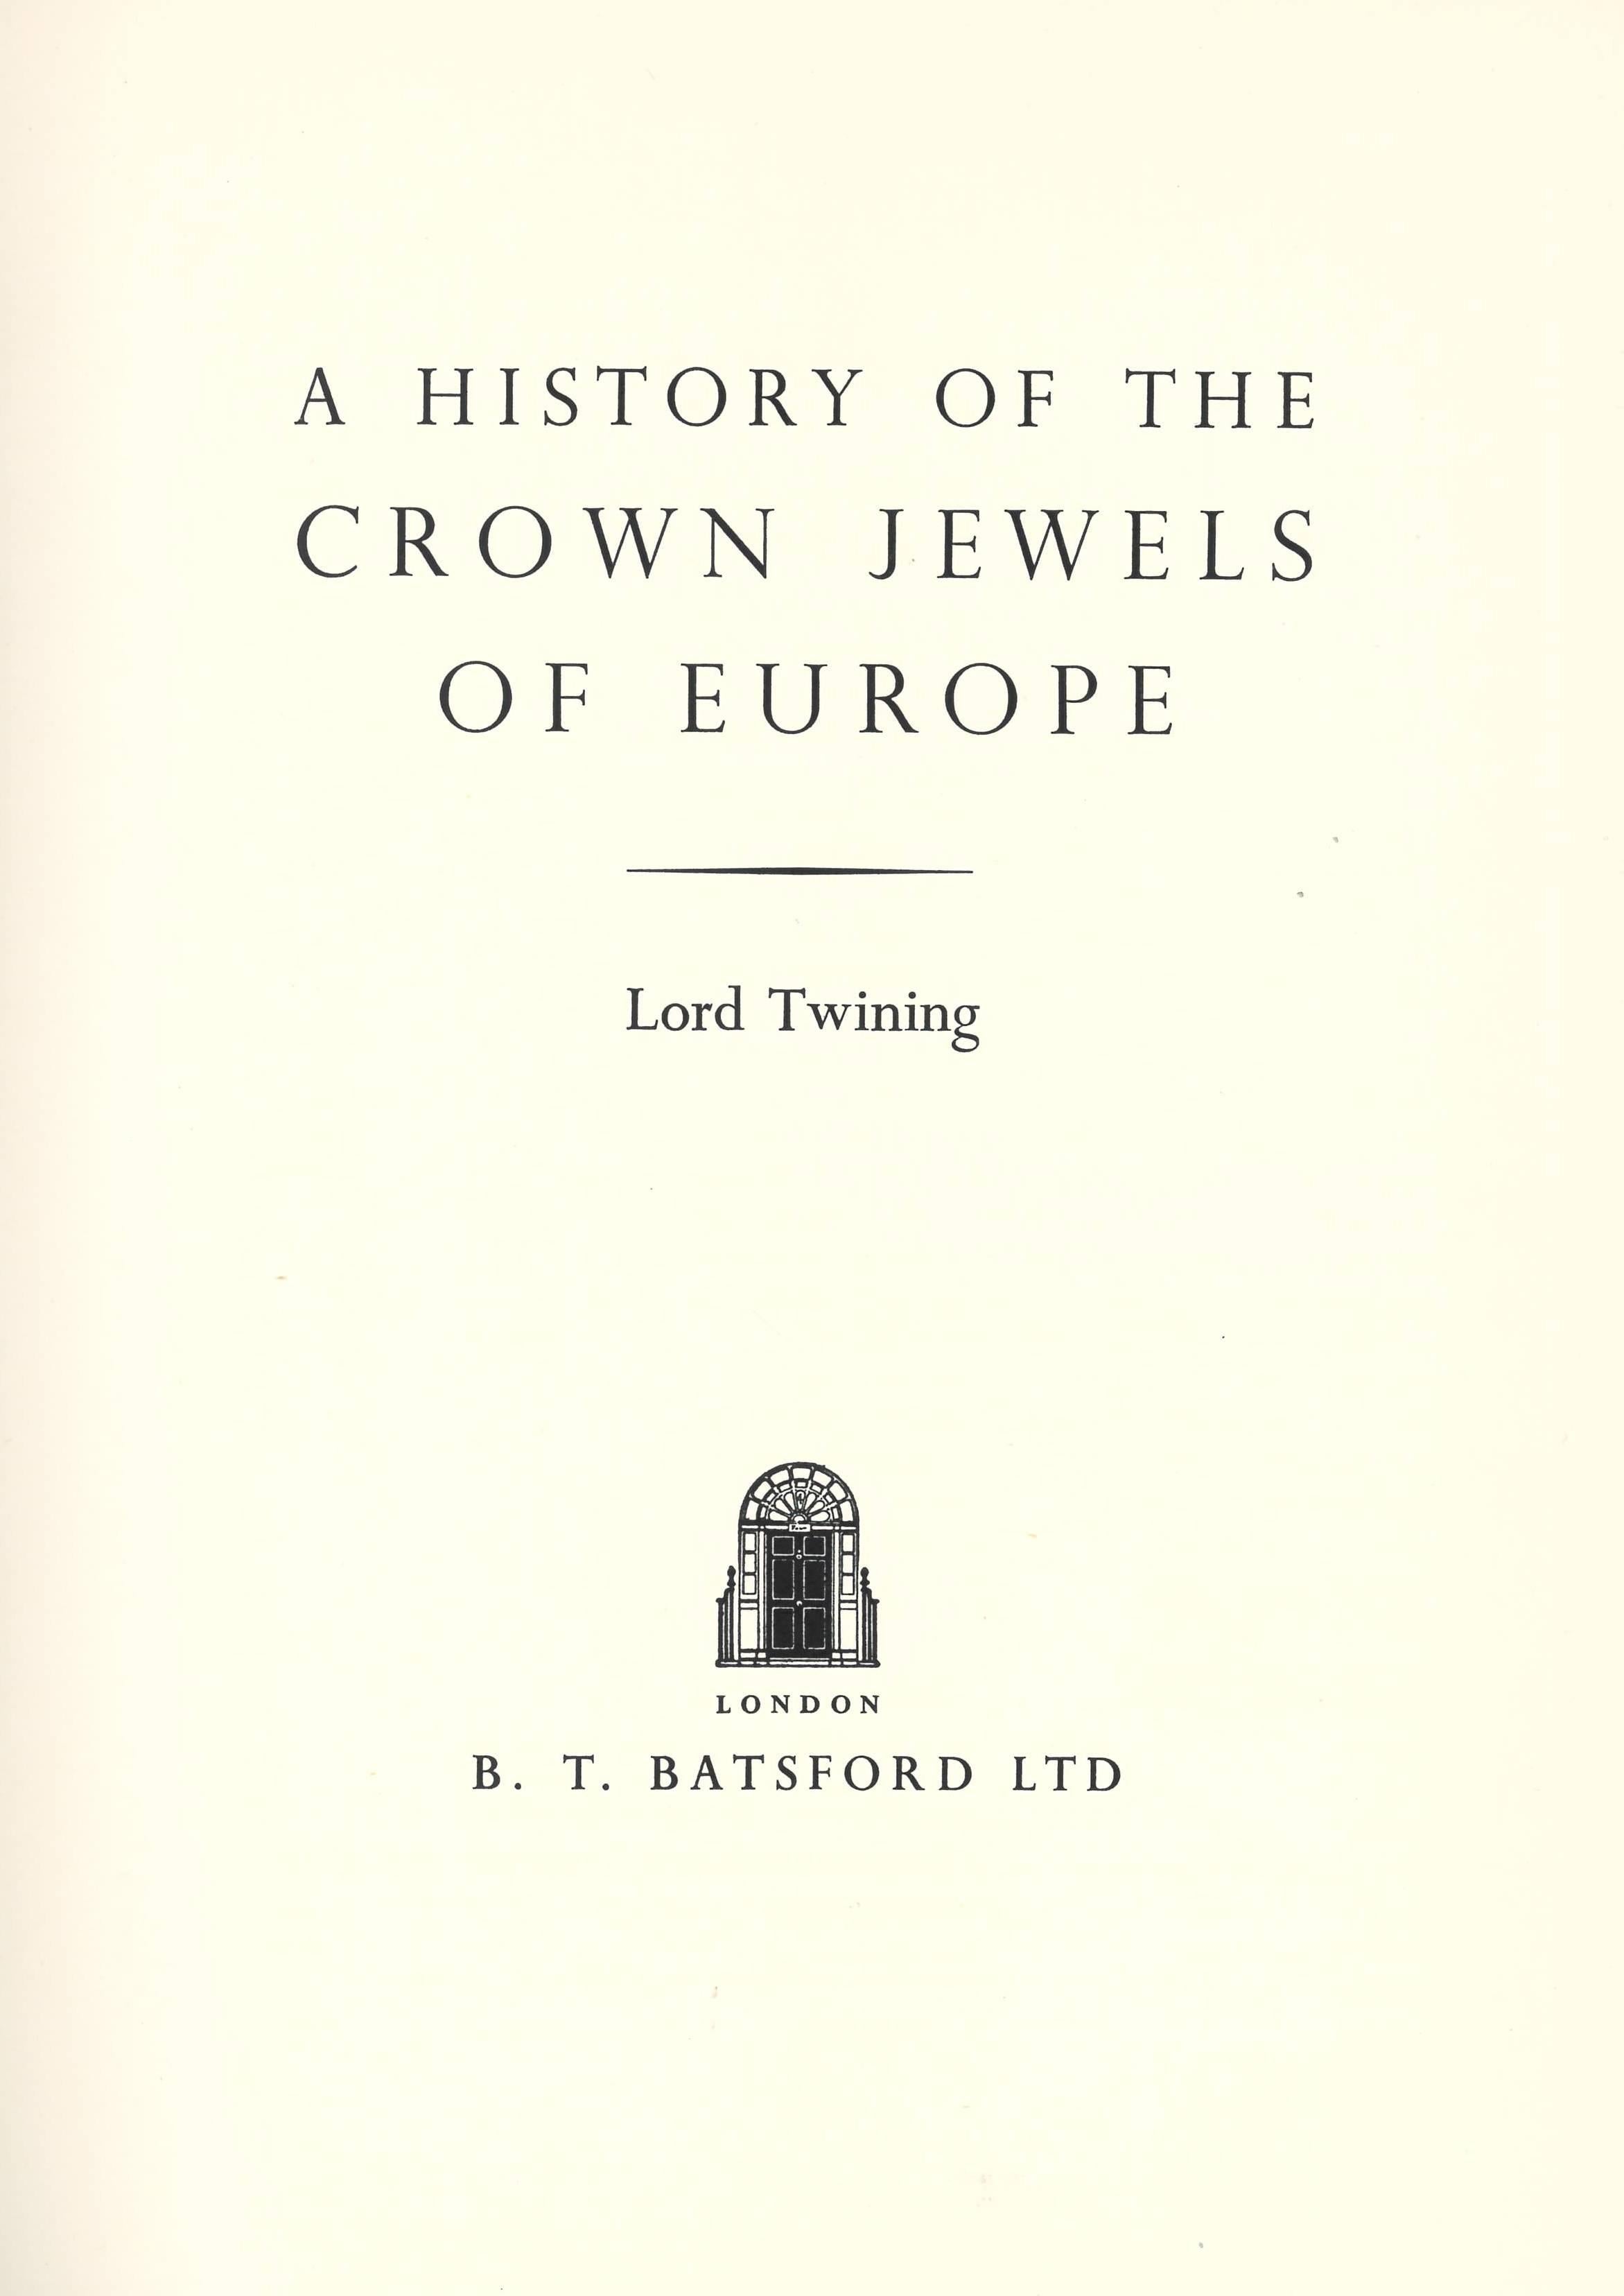 Ce livre écrit par Lord Twining est un ouvrage véritablement monumental, qui traite de manière exhaustive de l'histoire des insignes et des joyaux de la couronne européens. Il couvre une période de dix-sept siècles et les informations fournies sont